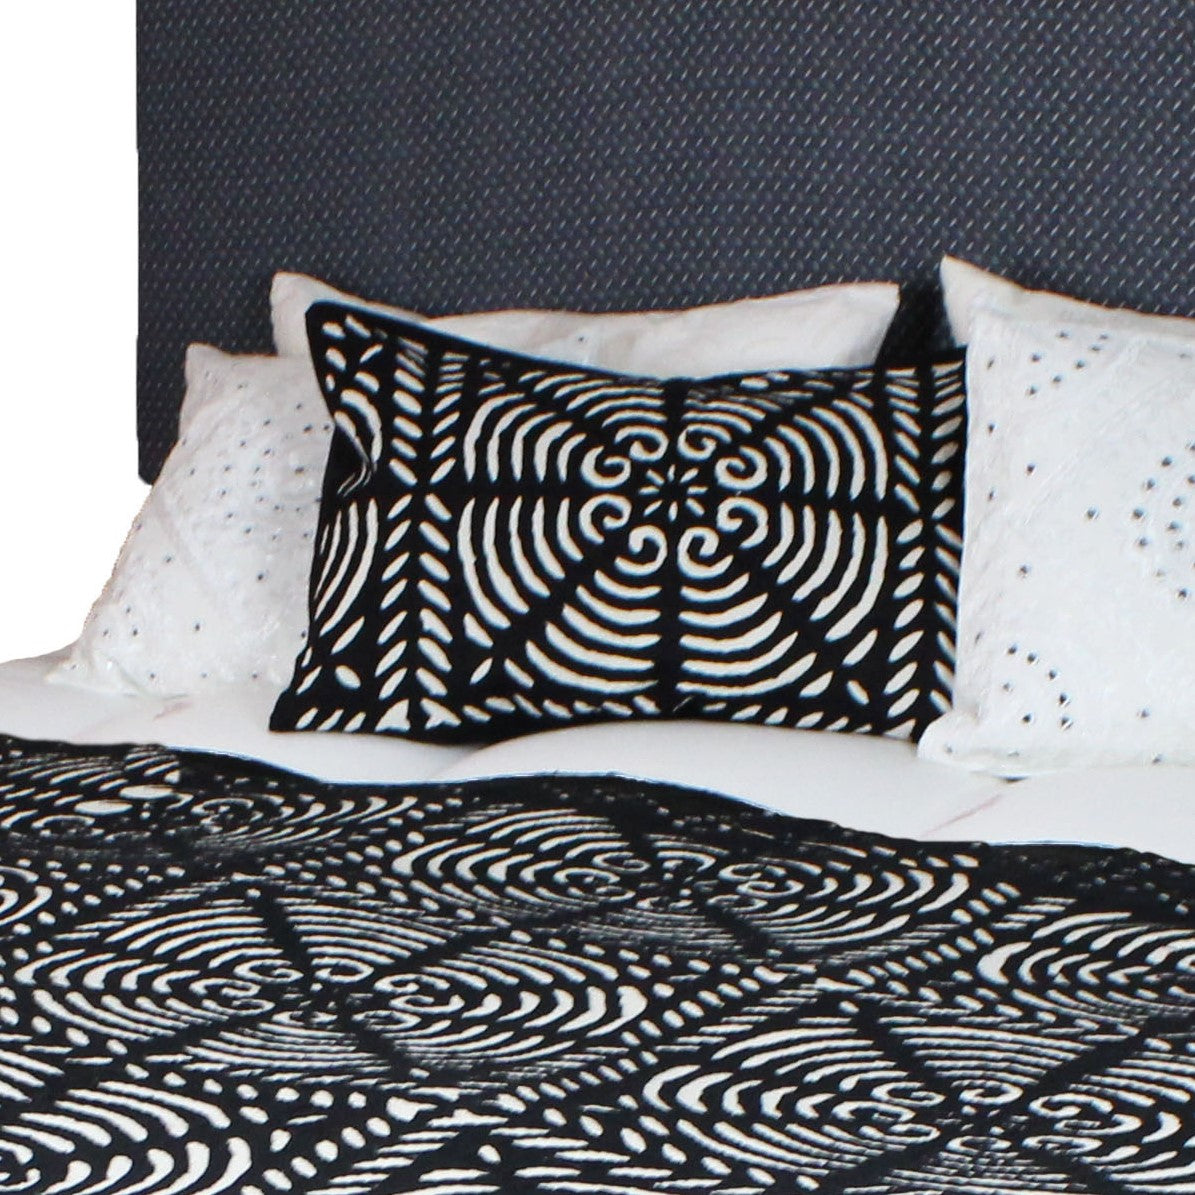 Tagesdecke und Kissen in schwarz weiß auf Bett dekoriert